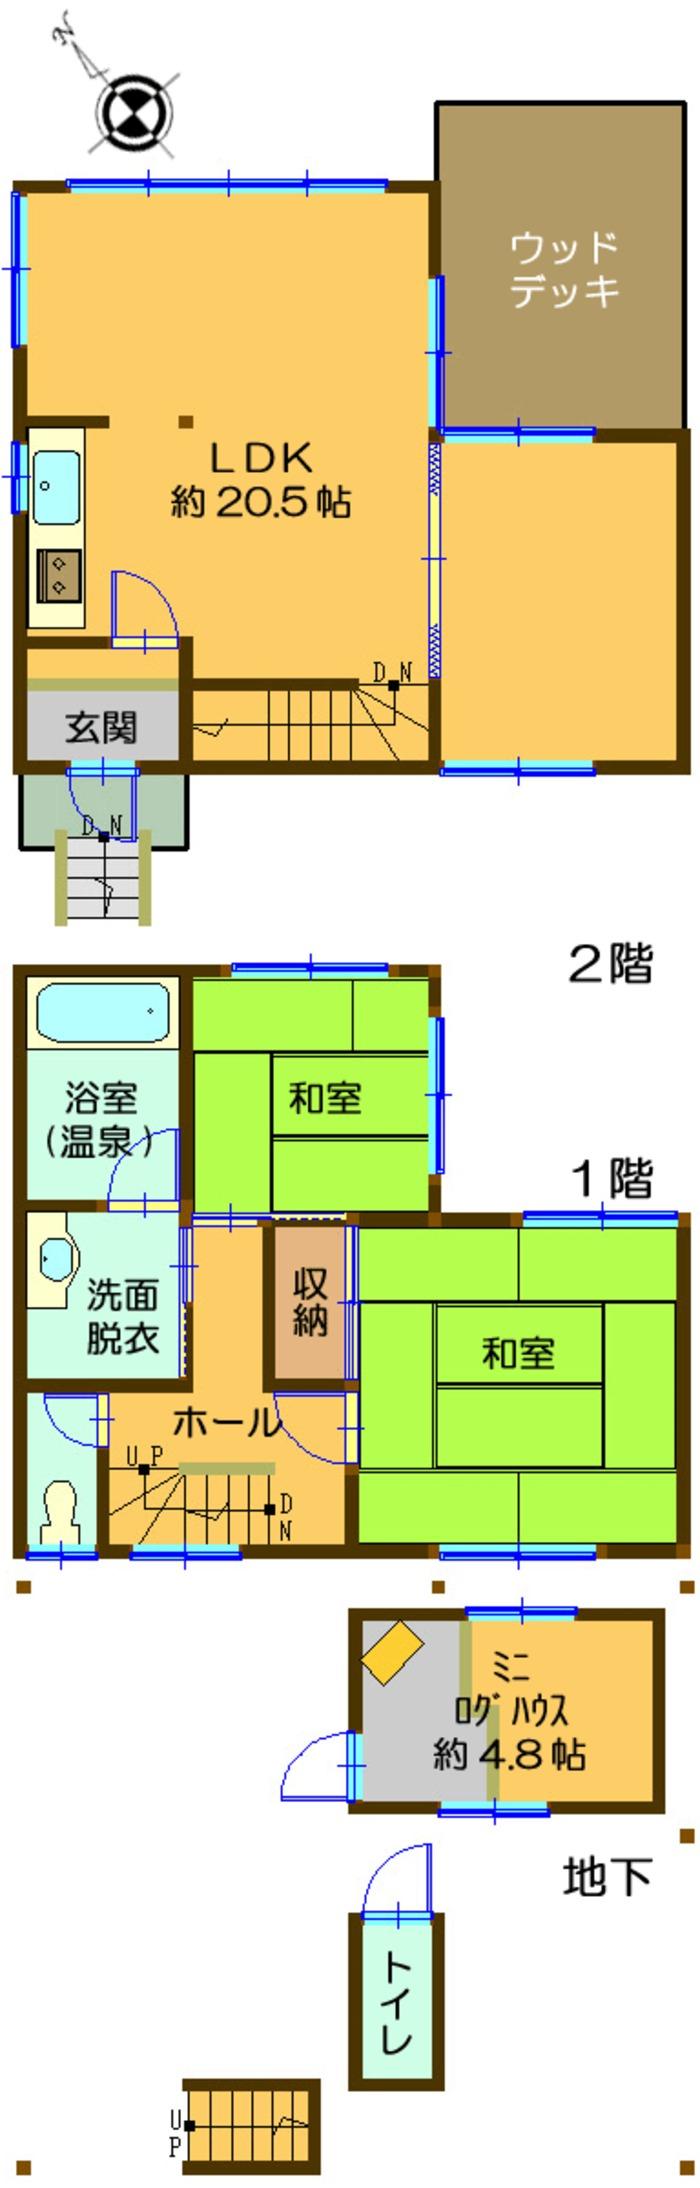 Floor plan. 4.5 million yen, 2LDK, Land area 354.56 sq m , Building area 92.7 sq m